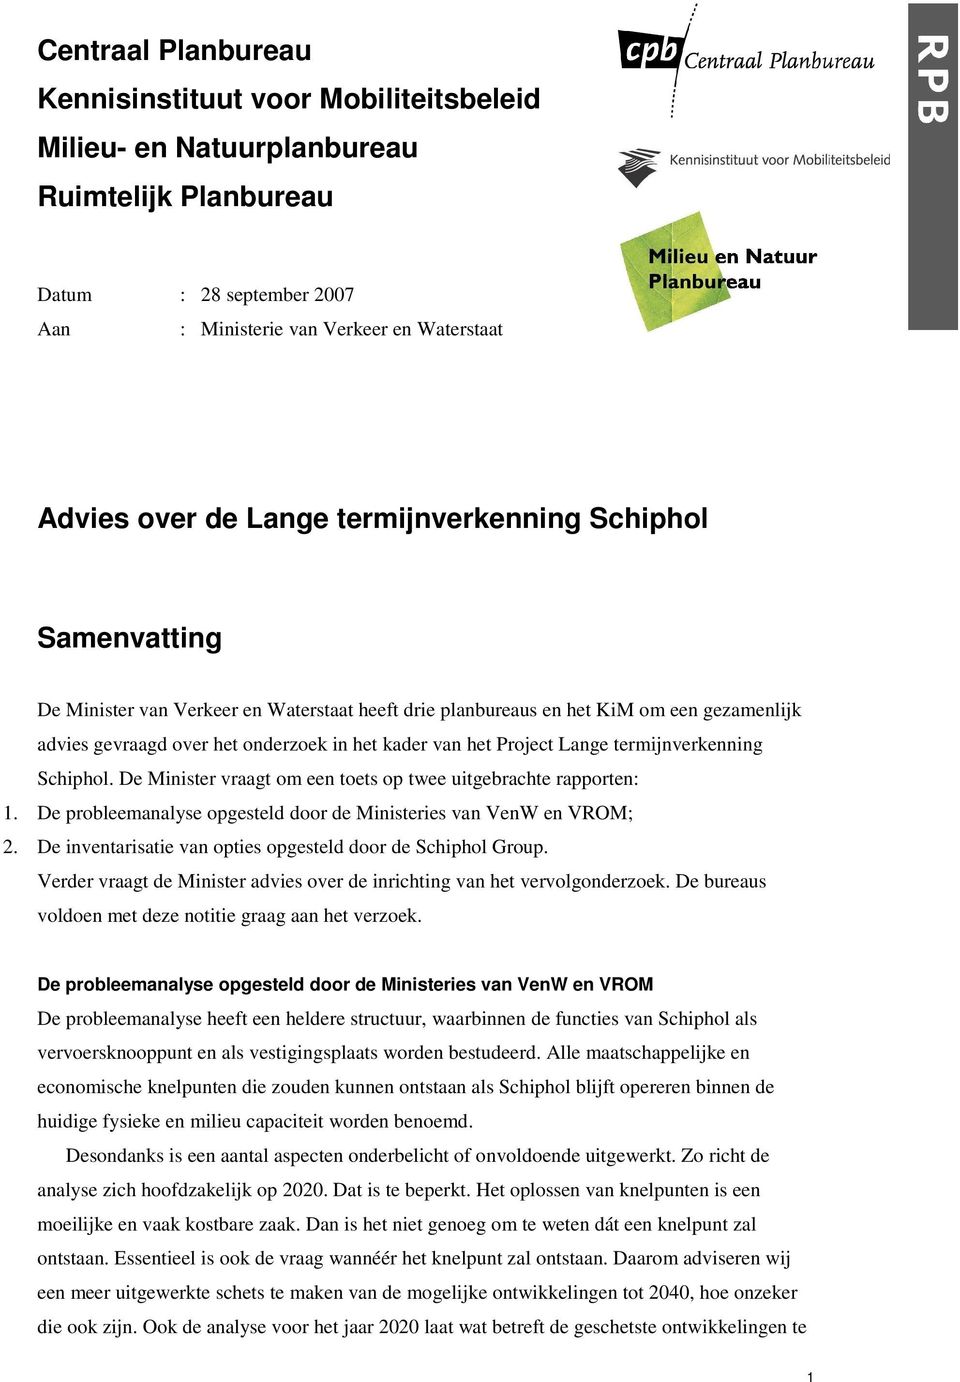 Lange termijnverkenning Schiphol. De Minister vraagt om een toets op twee uitgebrachte rapporten: 1. De probleemanalyse opgesteld door de Ministeries van VenW en VROM; 2.